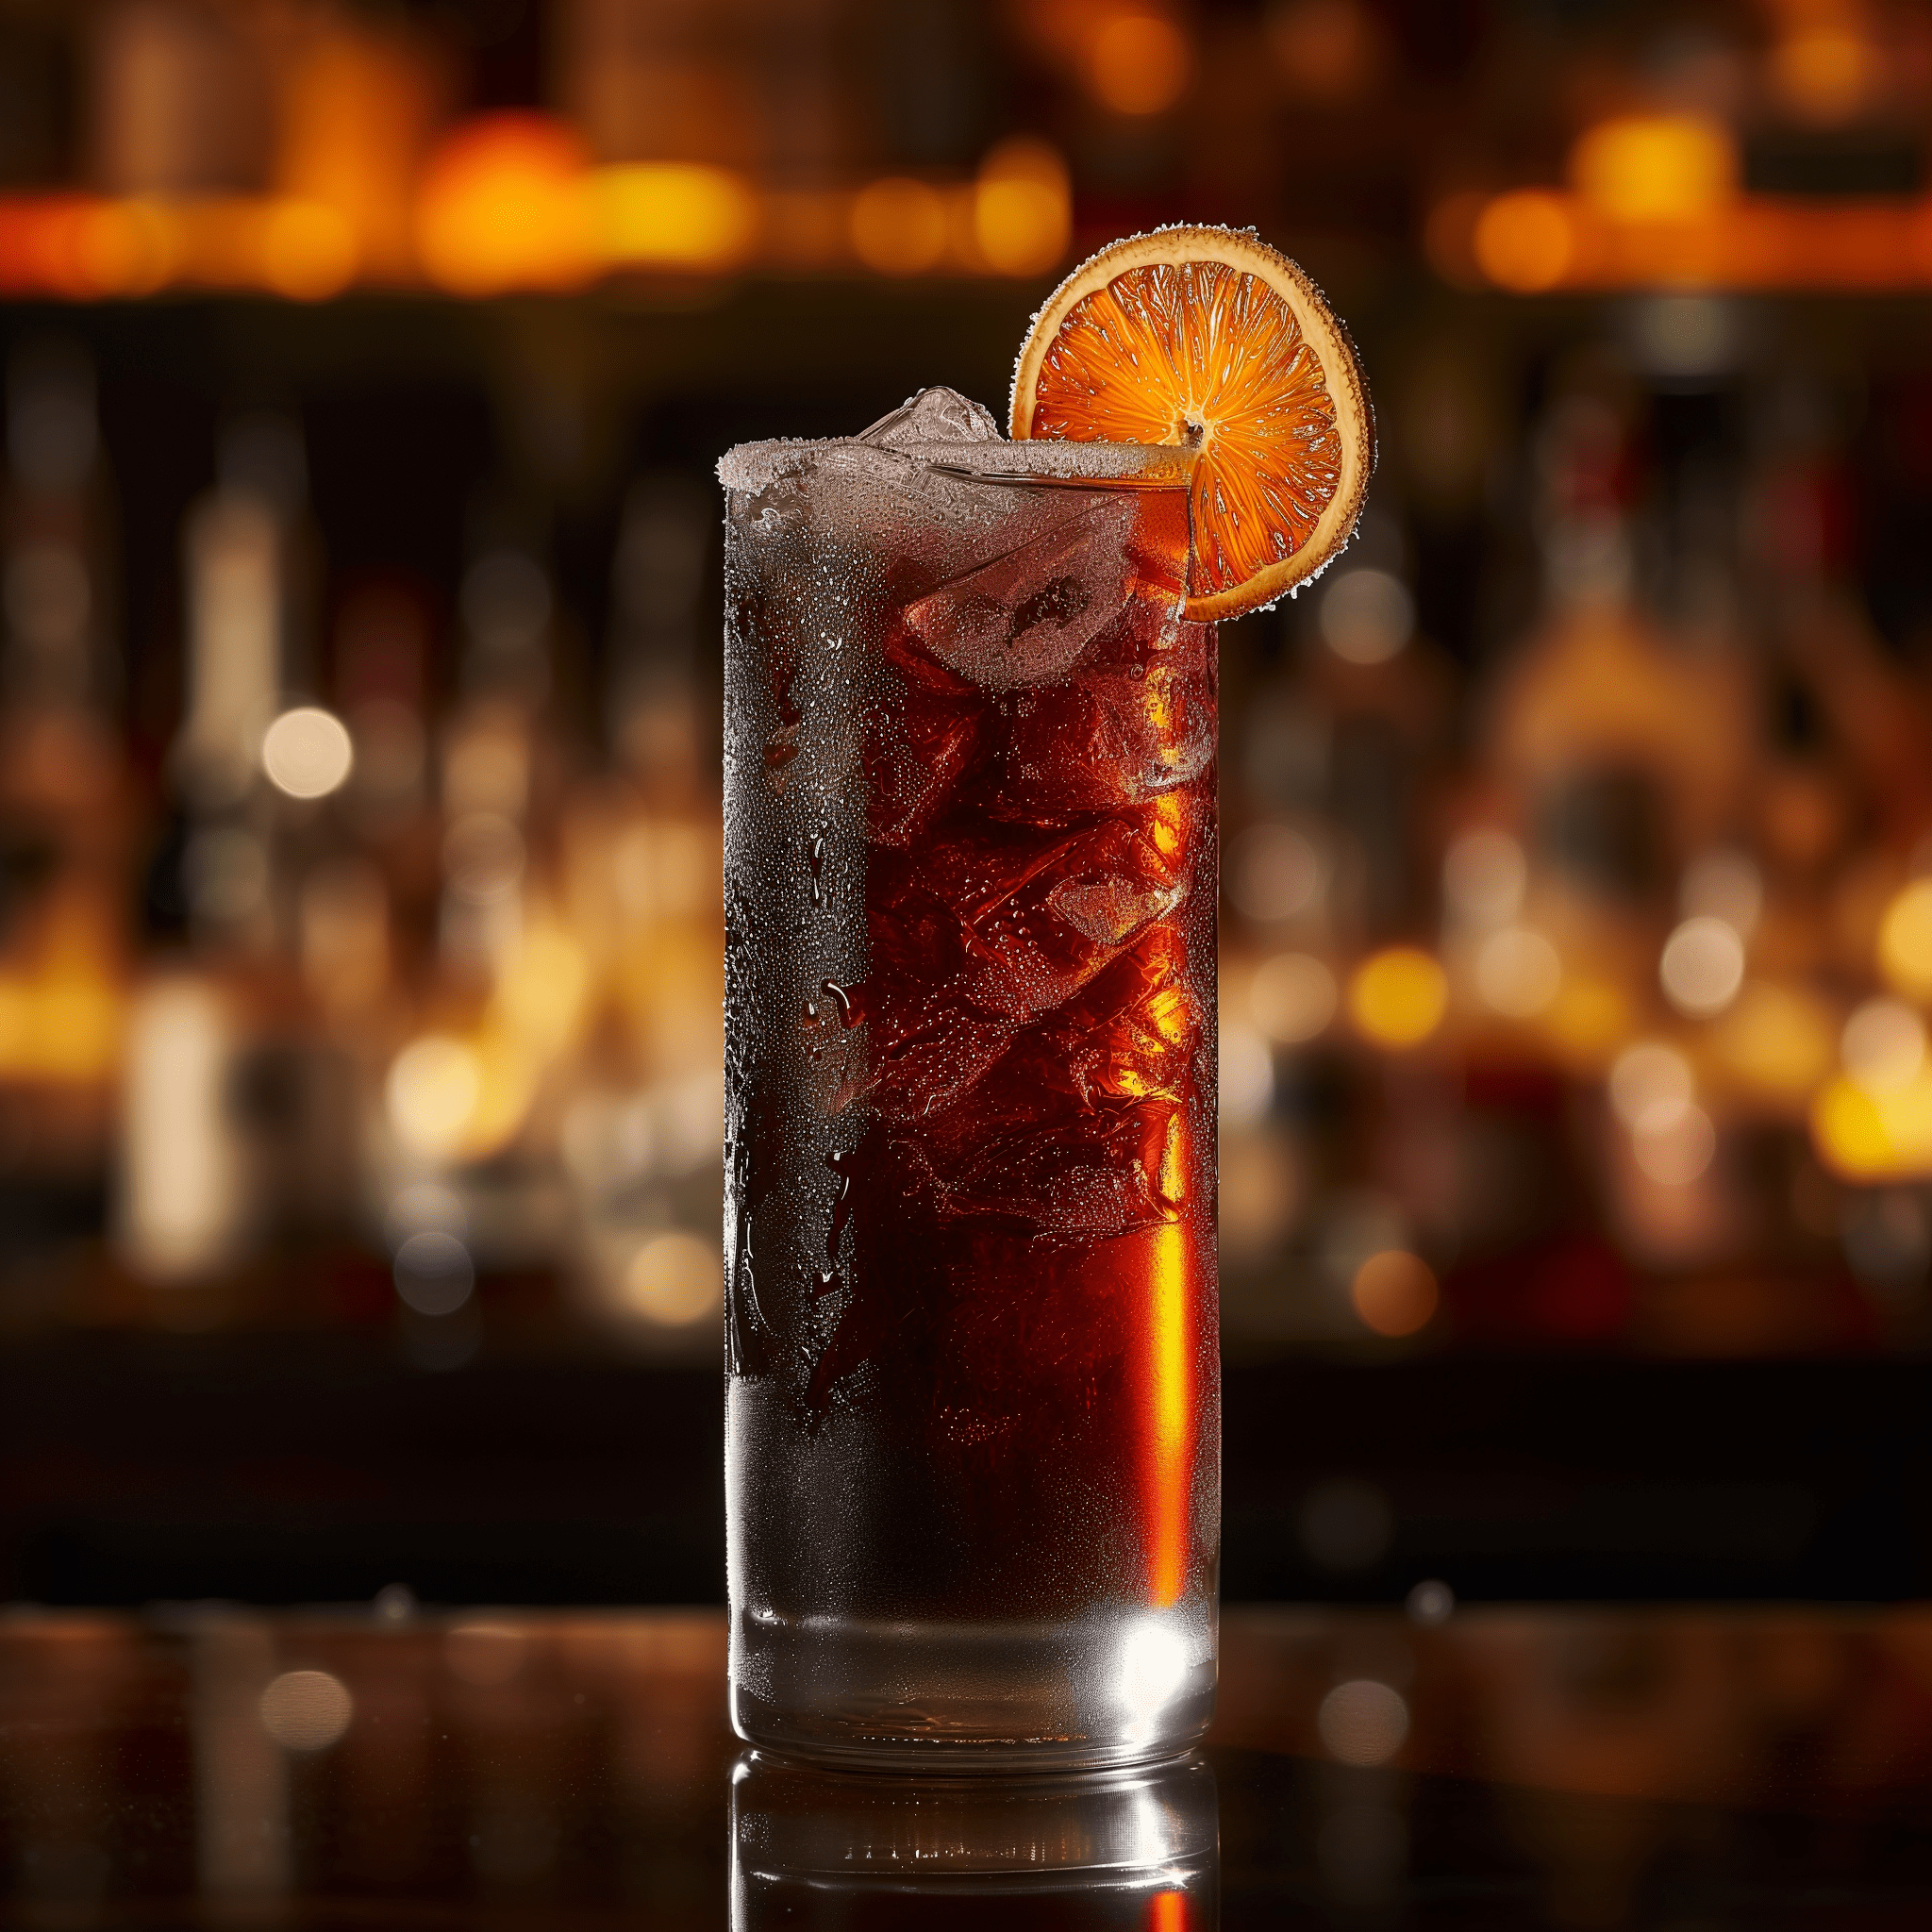 Red Tartan Cóctel Receta - El Red Tartan es una sinfonía de sabores, con los tonos ahumados del whisky escocés complementados perfectamente por el dulce cerezo y el cítrico. Es una mezcla armoniosa que es audaz y refrescante, con un sutil toque de especias de los amargos de Angostura y una suave efervescencia del refresco.